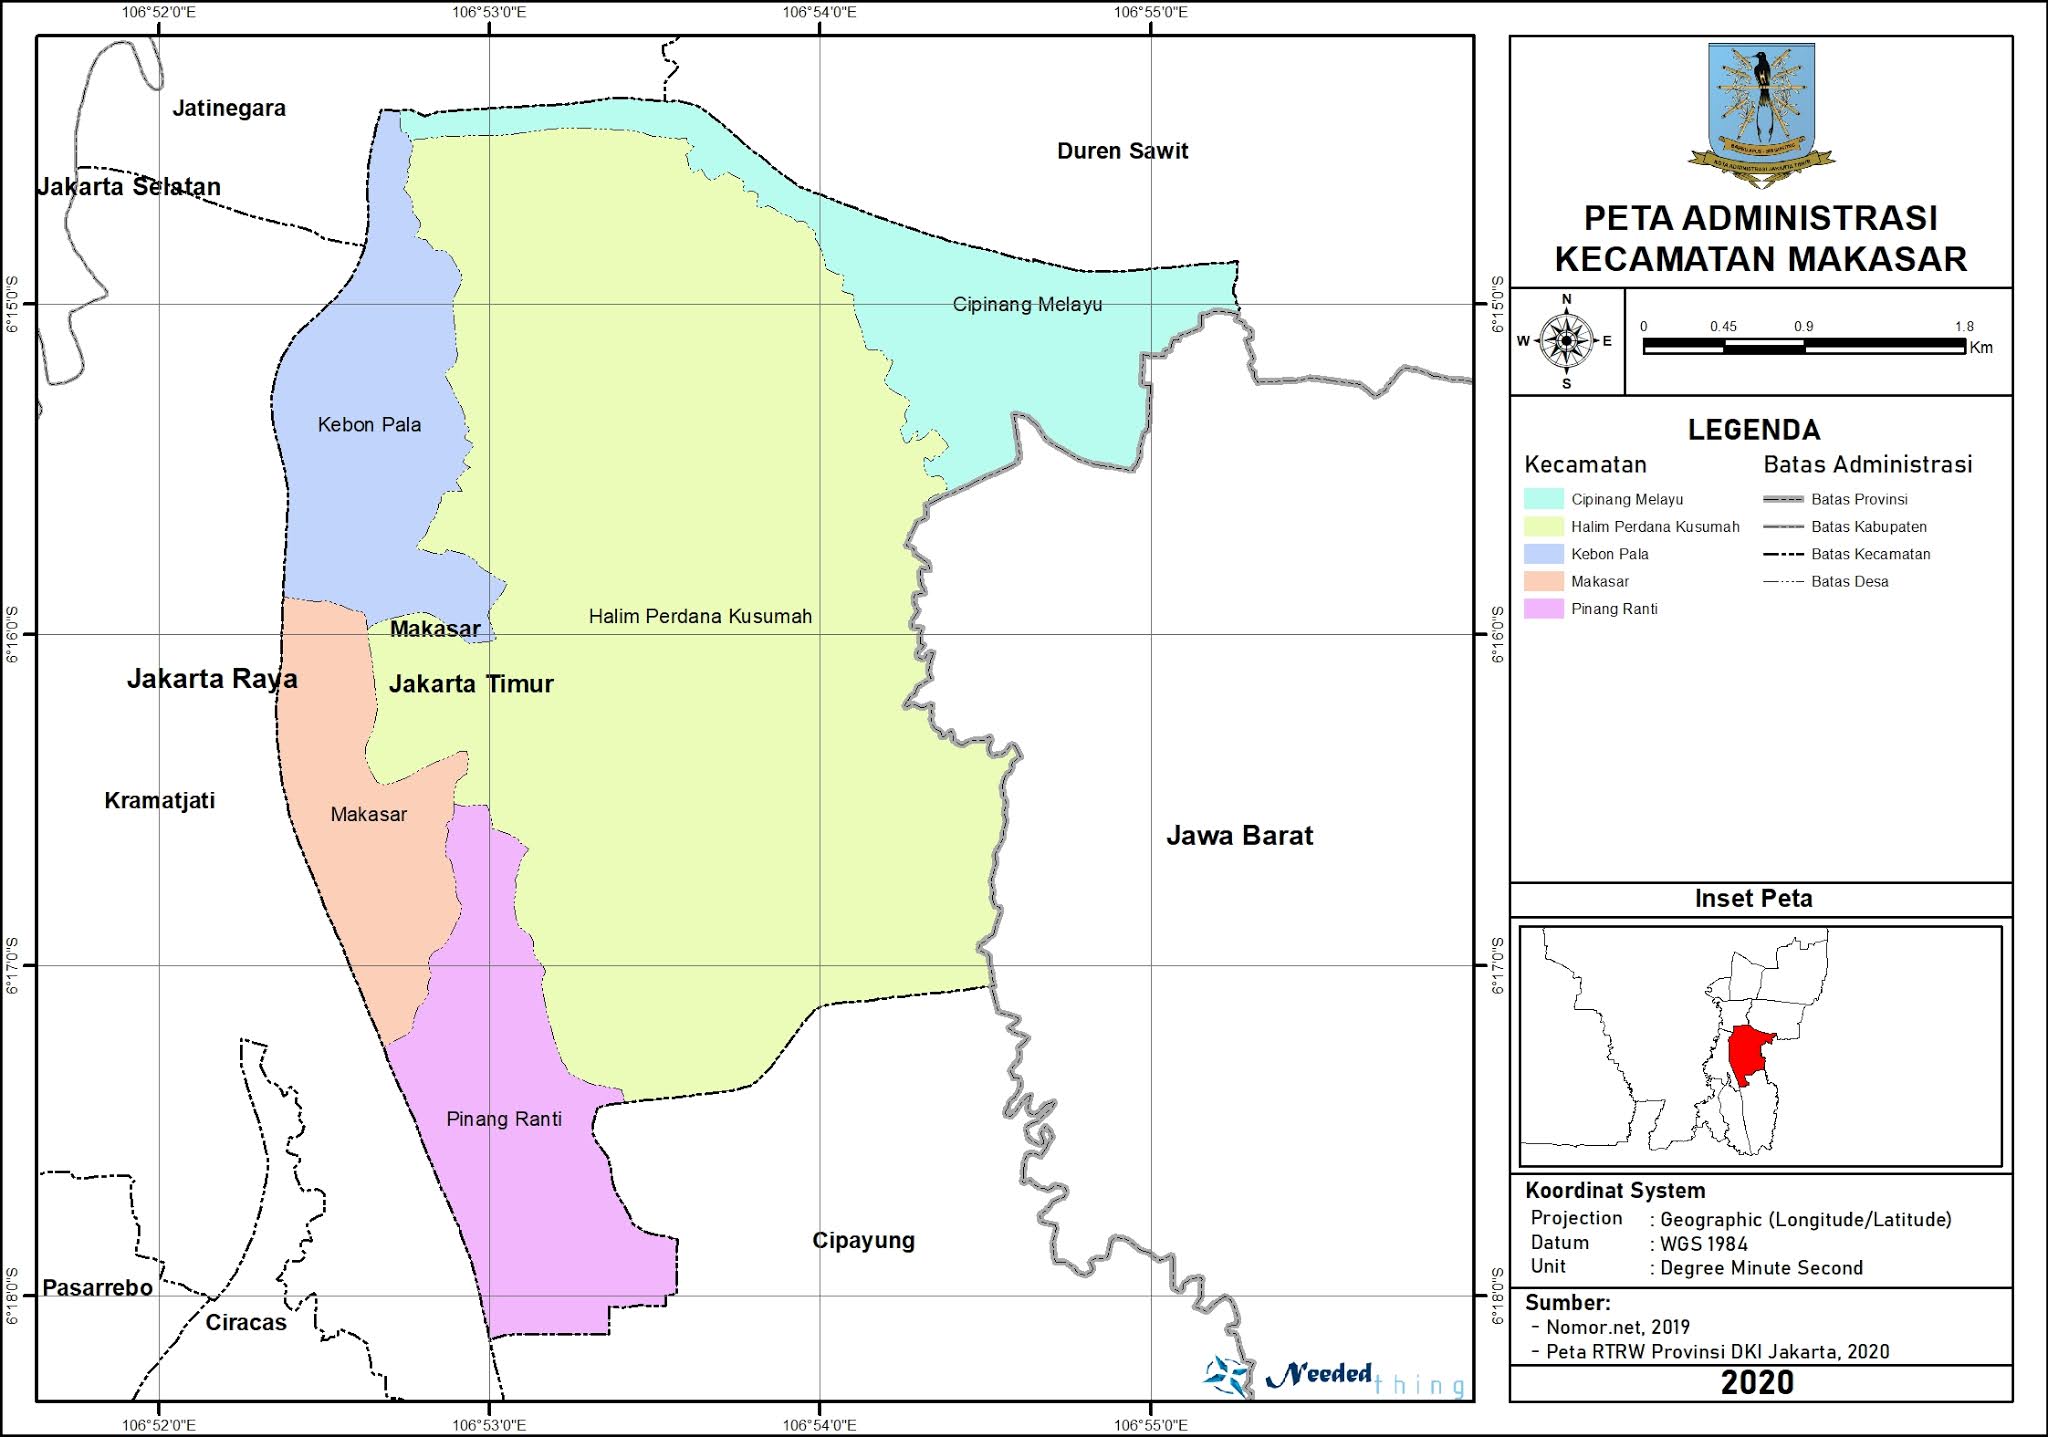 Peta Administrasi Kecamatan Makasar Kota Jakarta Timur 